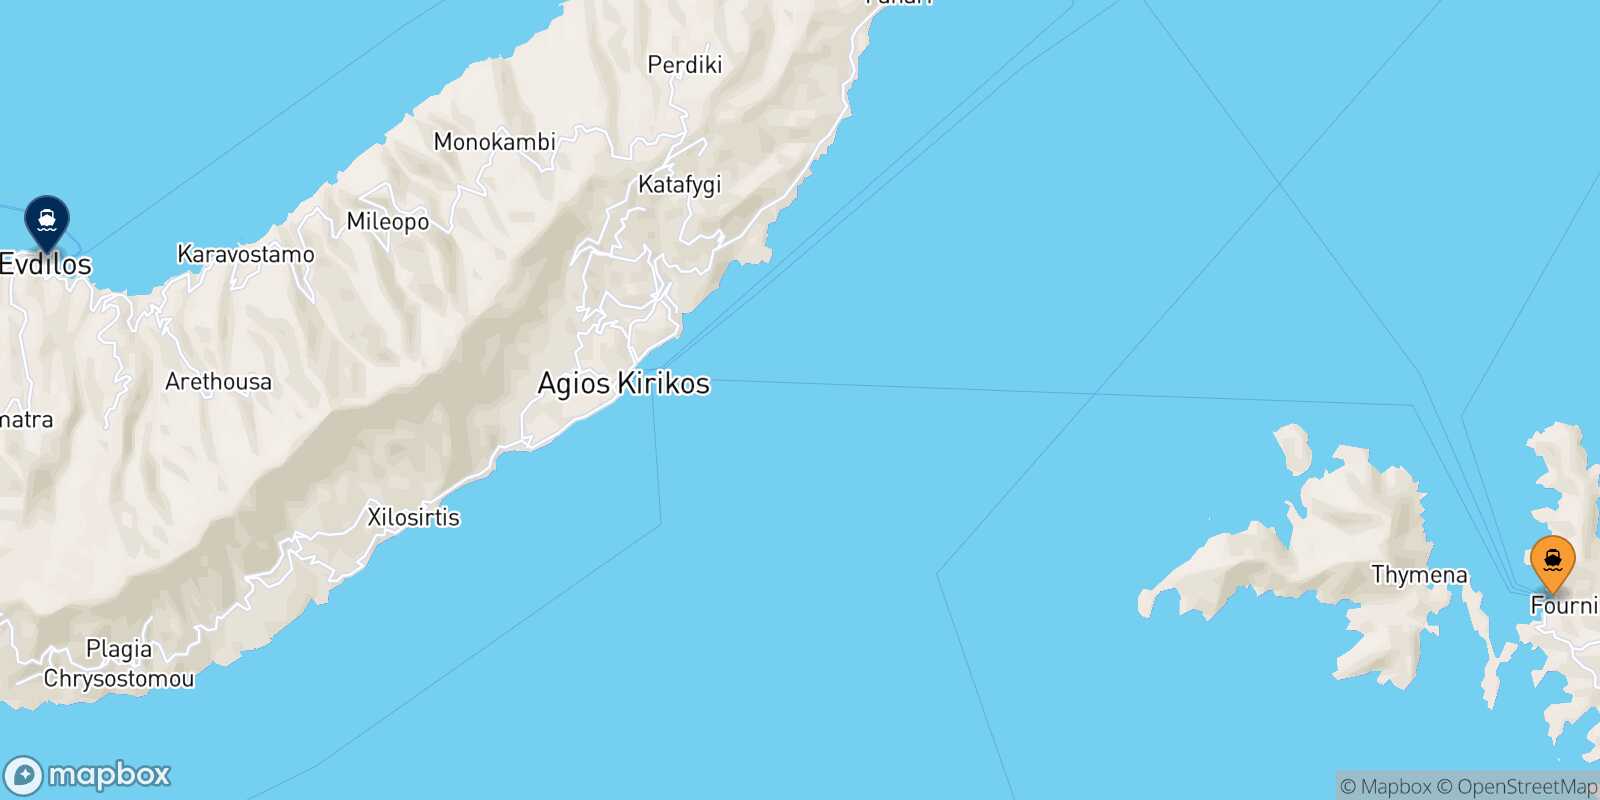 Carte des traverséesFourni Agios Kirikos (Ikaria)